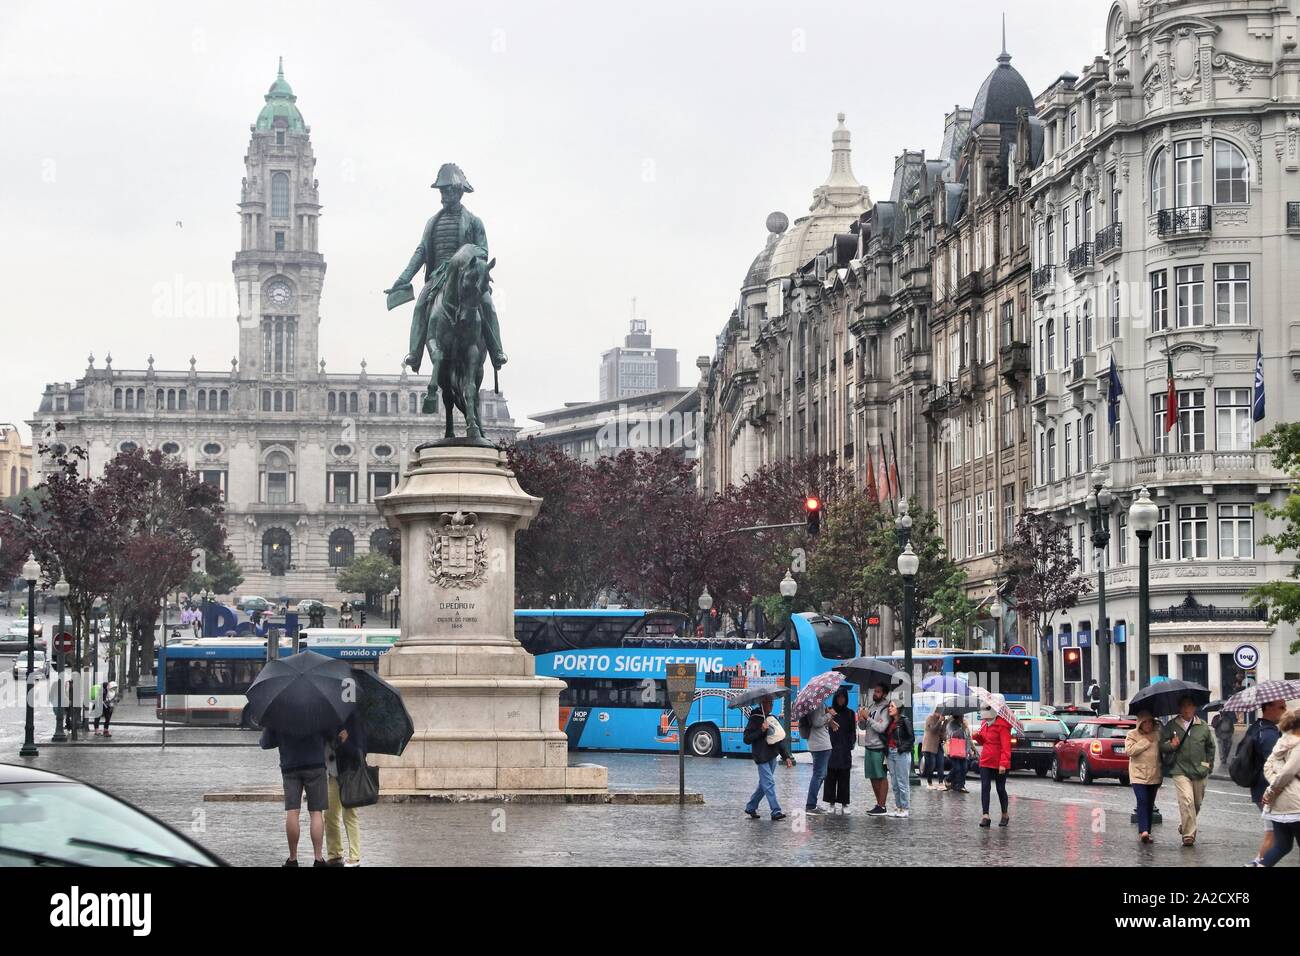 PORTO, Portogallo - 24 Maggio 2018: turisti visitano rainy city square a Porto, Portogallo. Porto è la seconda più grande città in Portogallo. La città vecchia è un UNES Foto Stock